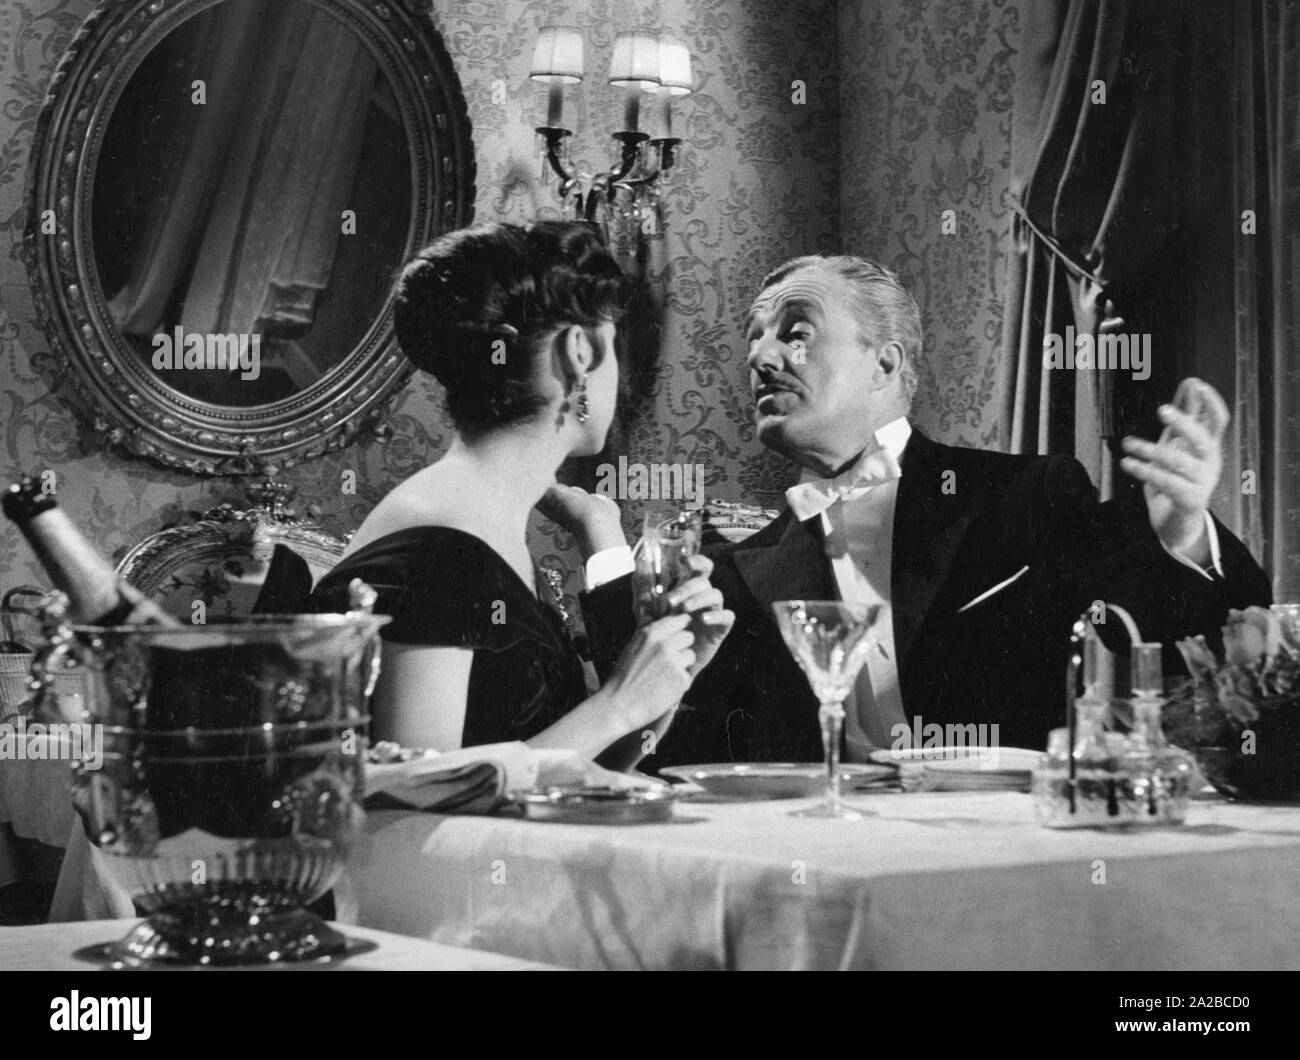 Il regista italiano e attore Vittorio De Sica con l'attrice Caterina Valente in "Casino de Paris" (1957). Avviso di Copyright: Max Scheler / SZ foto. Foto Stock